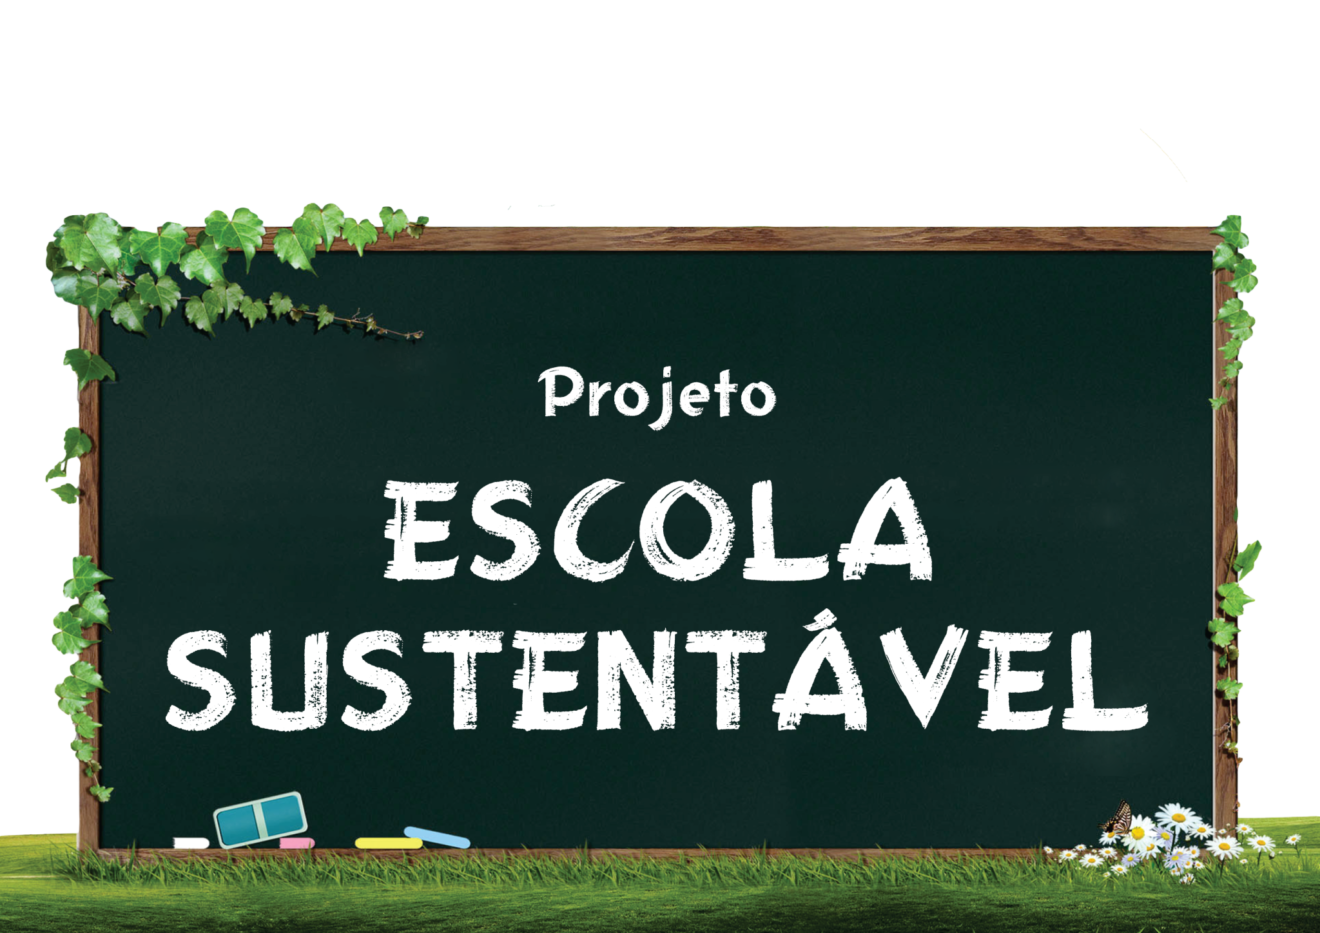 Projeto recolhe 7.760 quilos de plástico para reciclagem em escolas municipais do Rio Grande do Sul